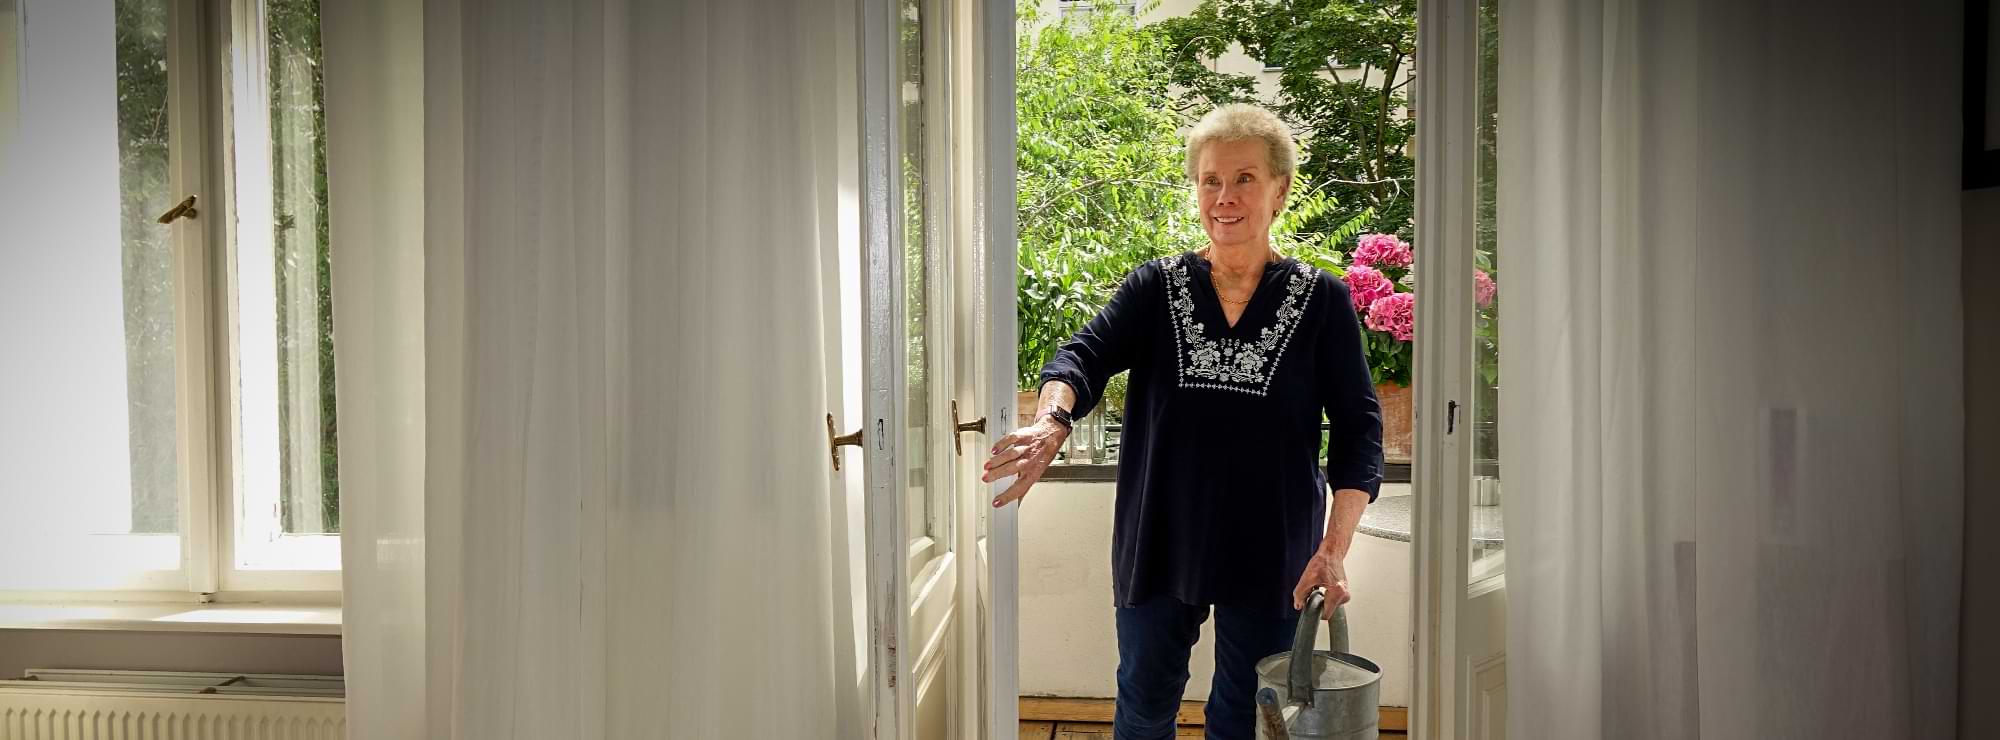 Susanne Kranz kommt mit einer Gießkanne vom Balkon in die Wohnung zurück